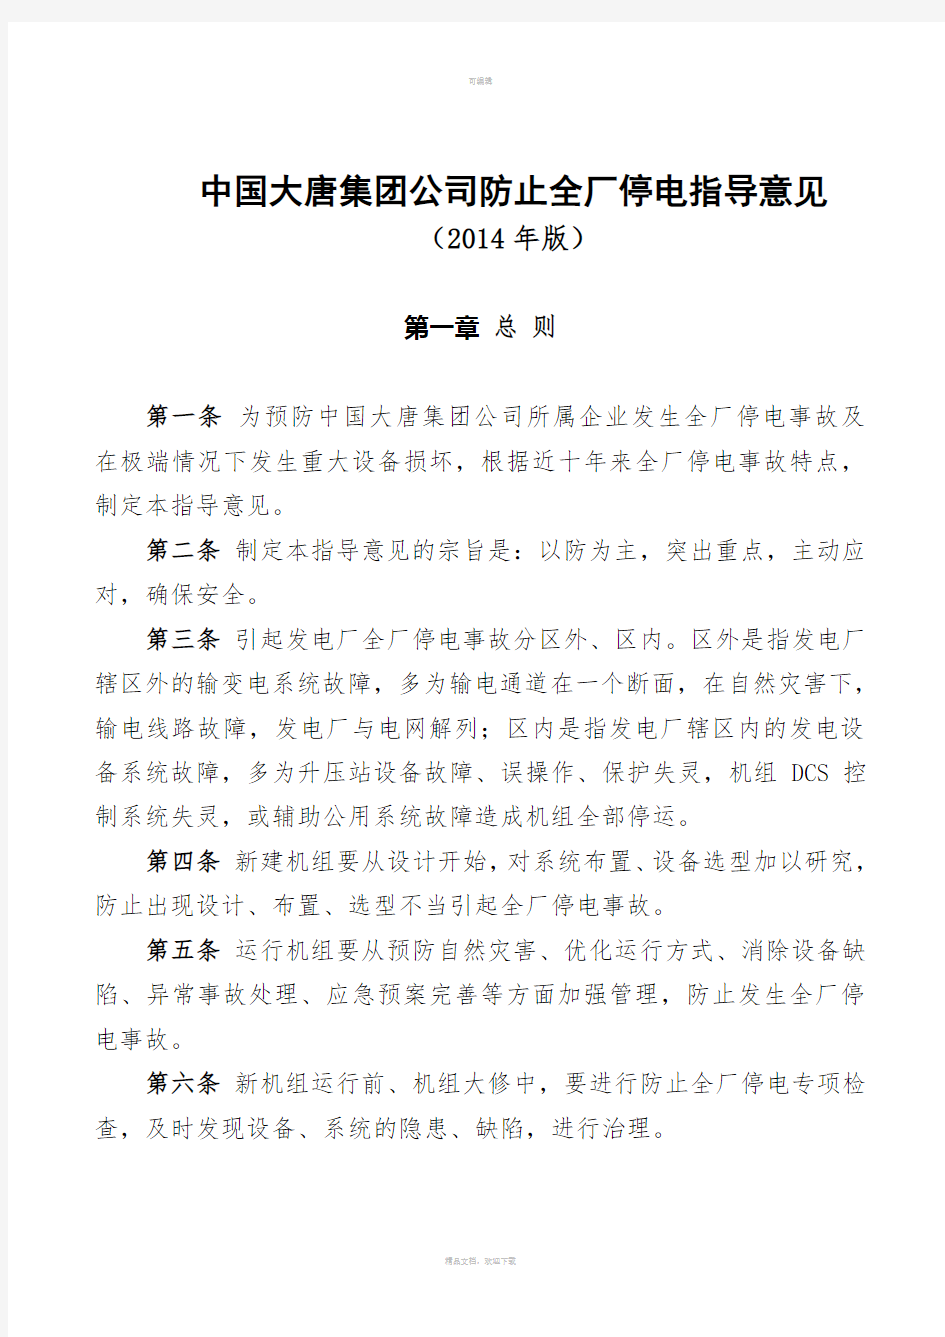 中国大唐集团公司防止全厂停电指导意见